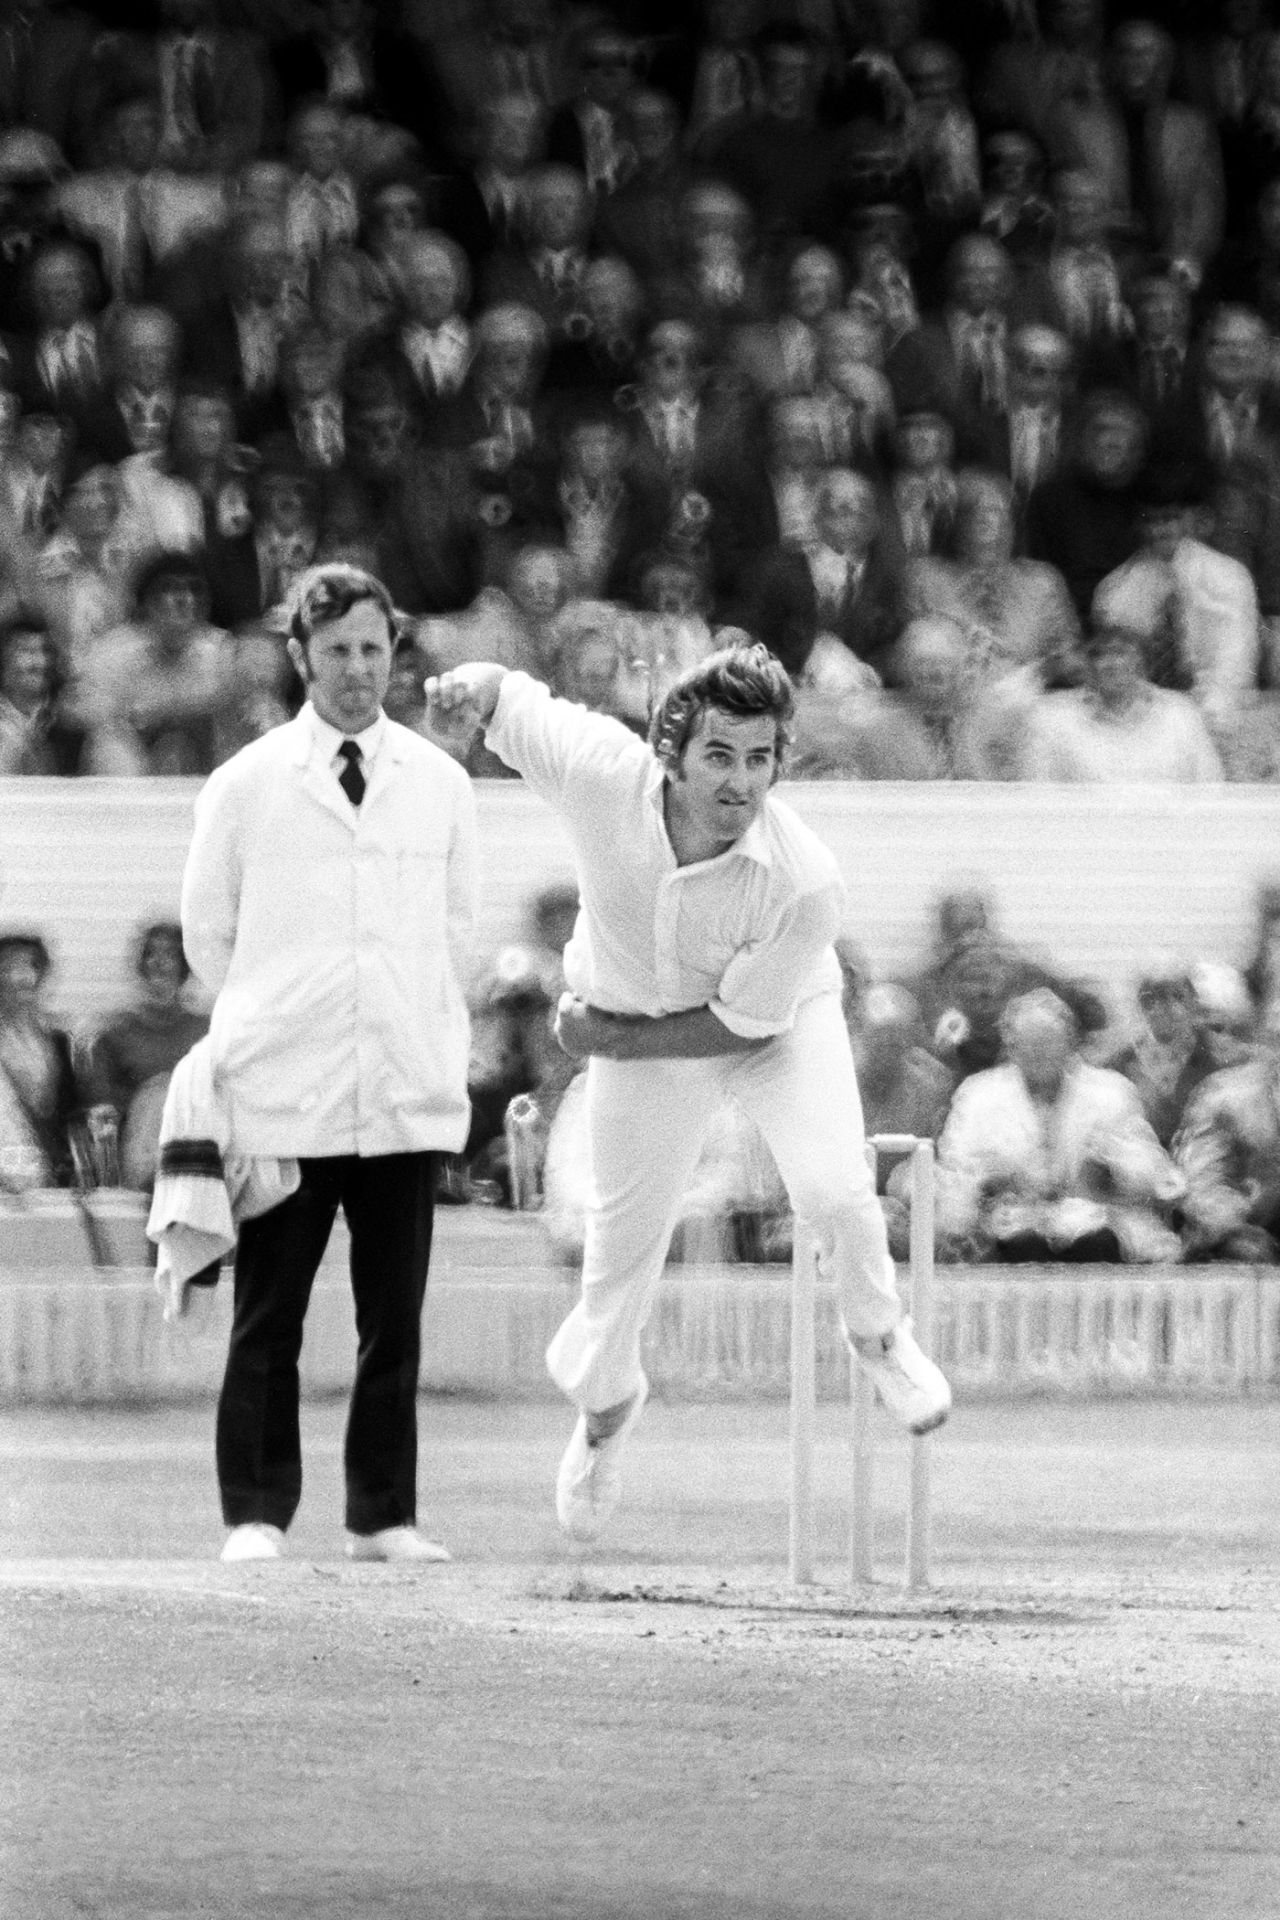 Gary Gilmour bowls, England, 1975